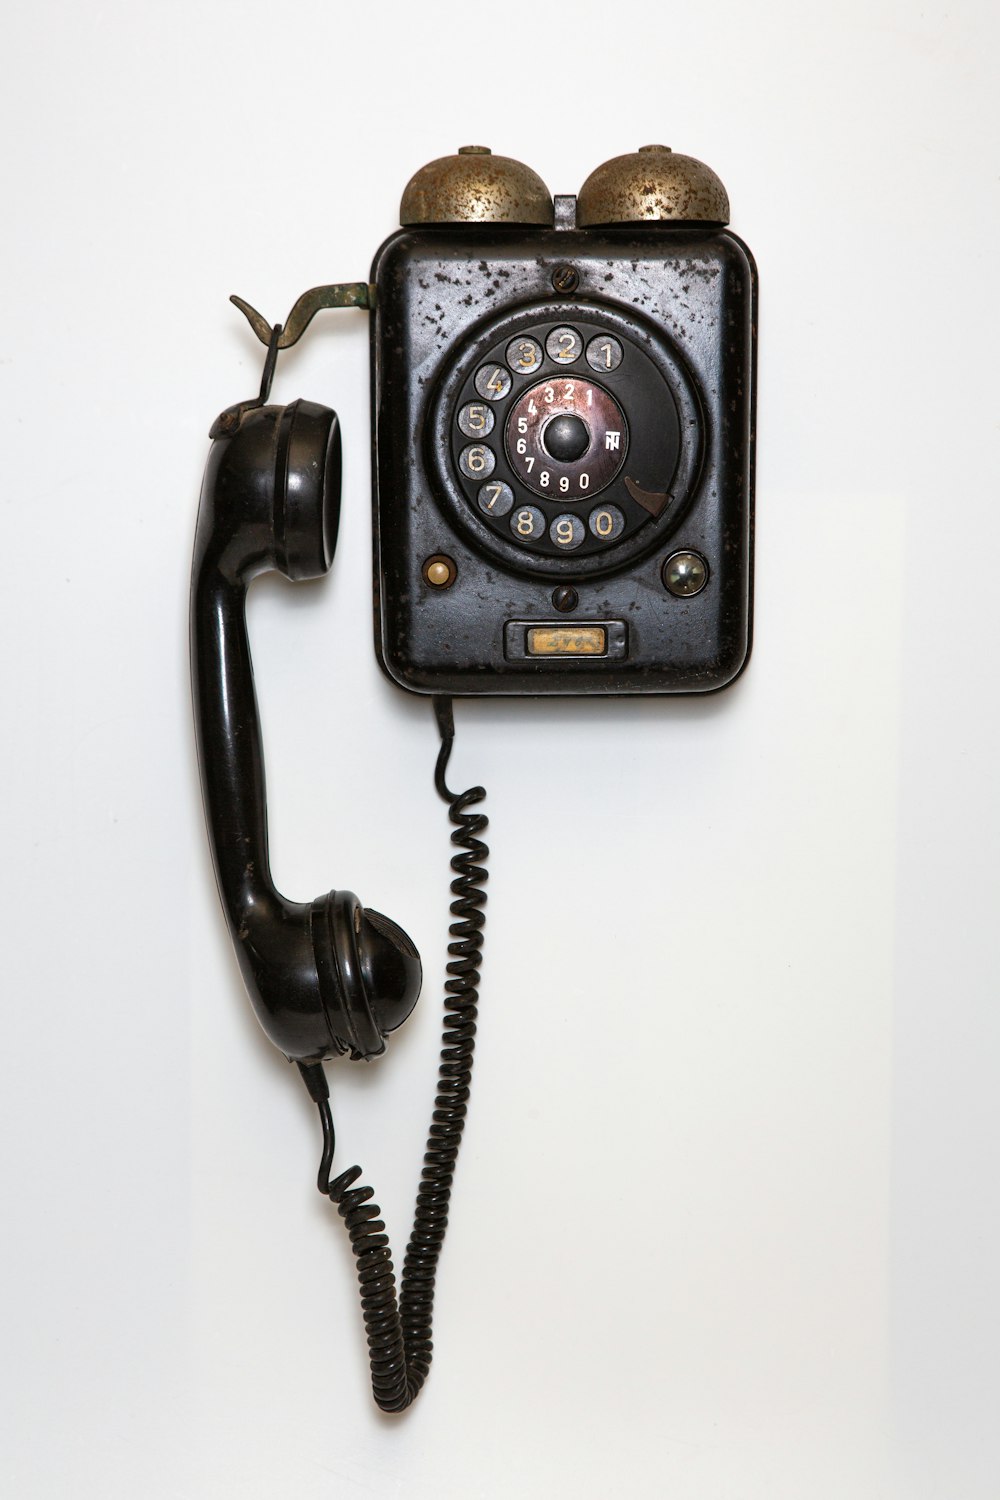 Antiguo Teléfono De La Casa Móvil En Blanco. Fotos, retratos, imágenes y  fotografía de archivo libres de derecho. Image 51194223